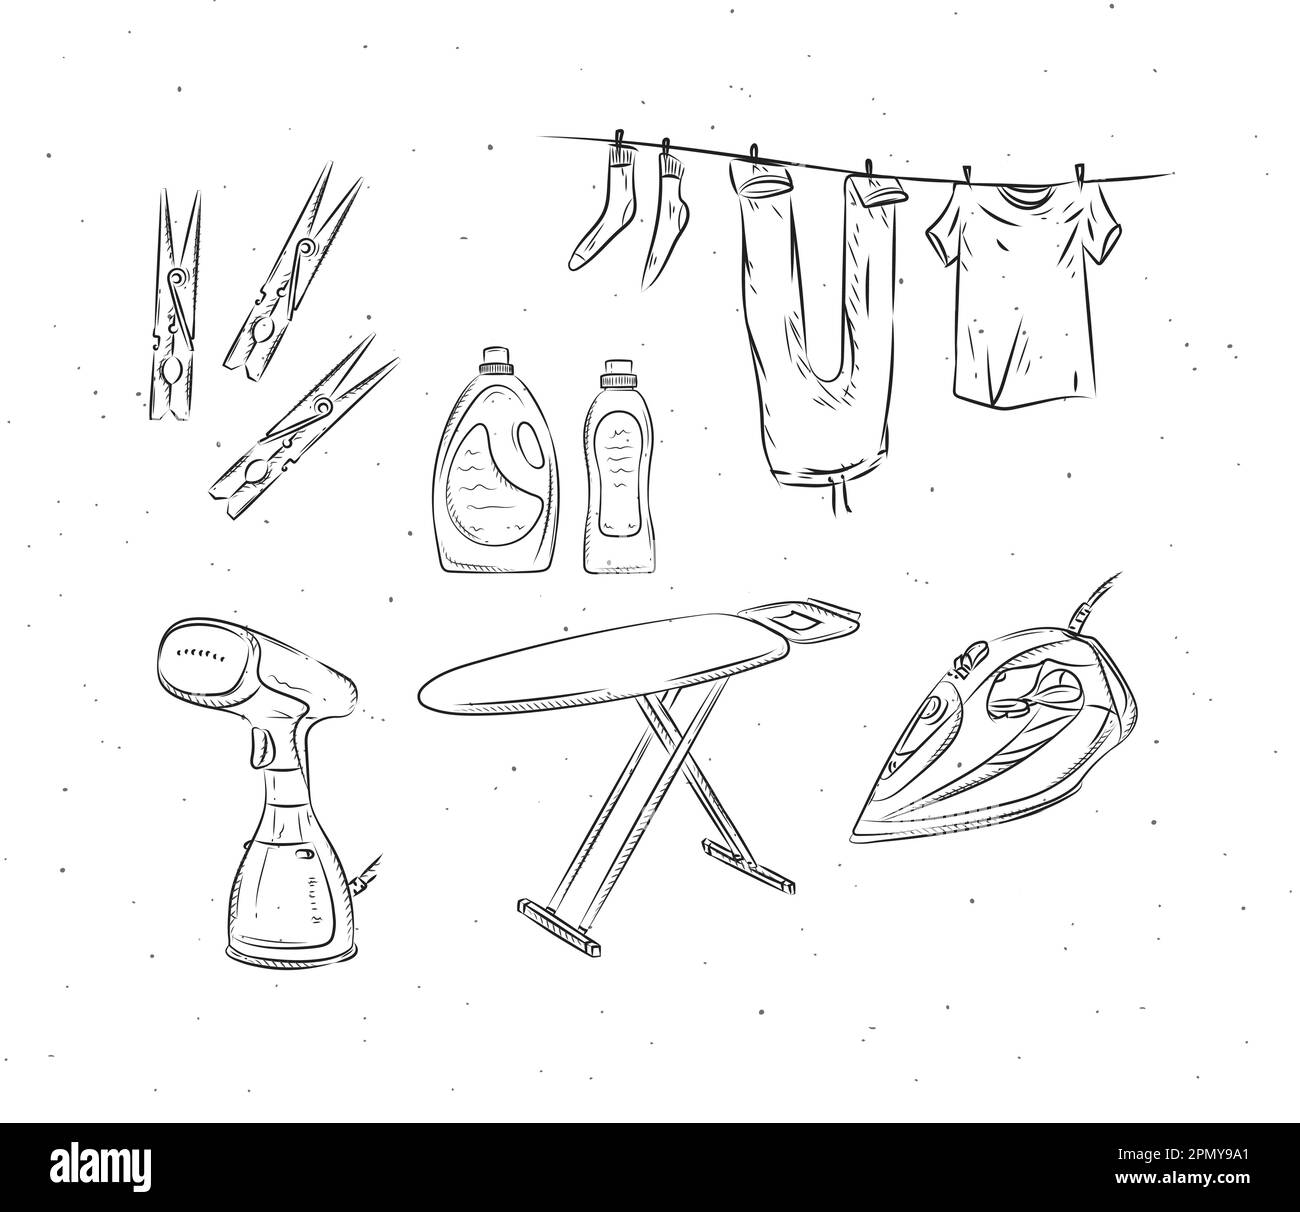 Accessori per stirare e lavare, spilla, stemella, ferro da stiro, ferro e asse da stiro, disegno in polvere, balsamo, lino, lavaggio, sapone in stile grafico Illustrazione Vettoriale